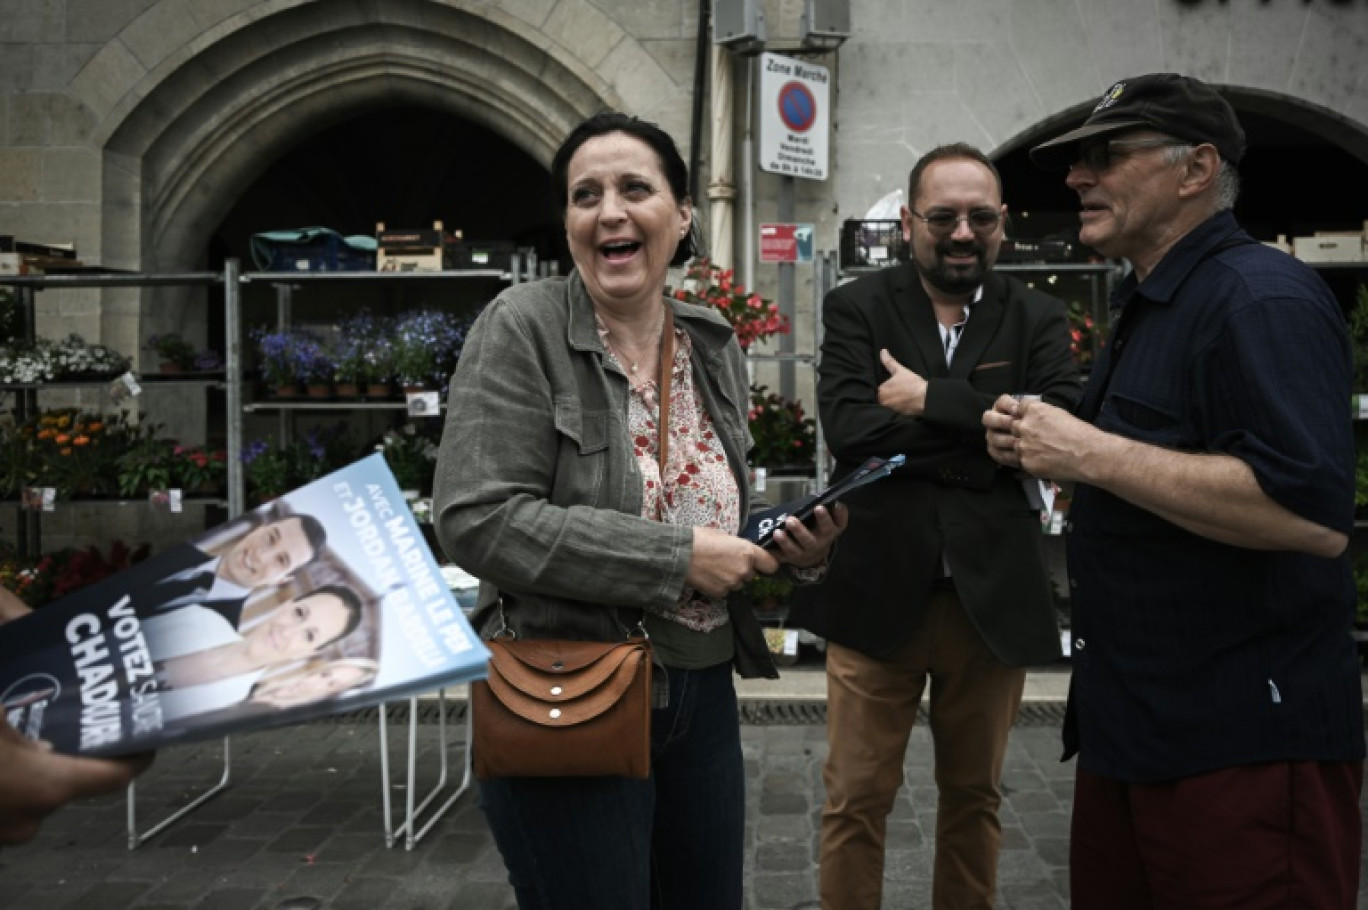 La candidate RN aux législatives, Sandrine Chadourne (c), distribue des tracts sur un marché à Libourne, le 2 juillet 2024 en Gironde © Philippe LOPEZ